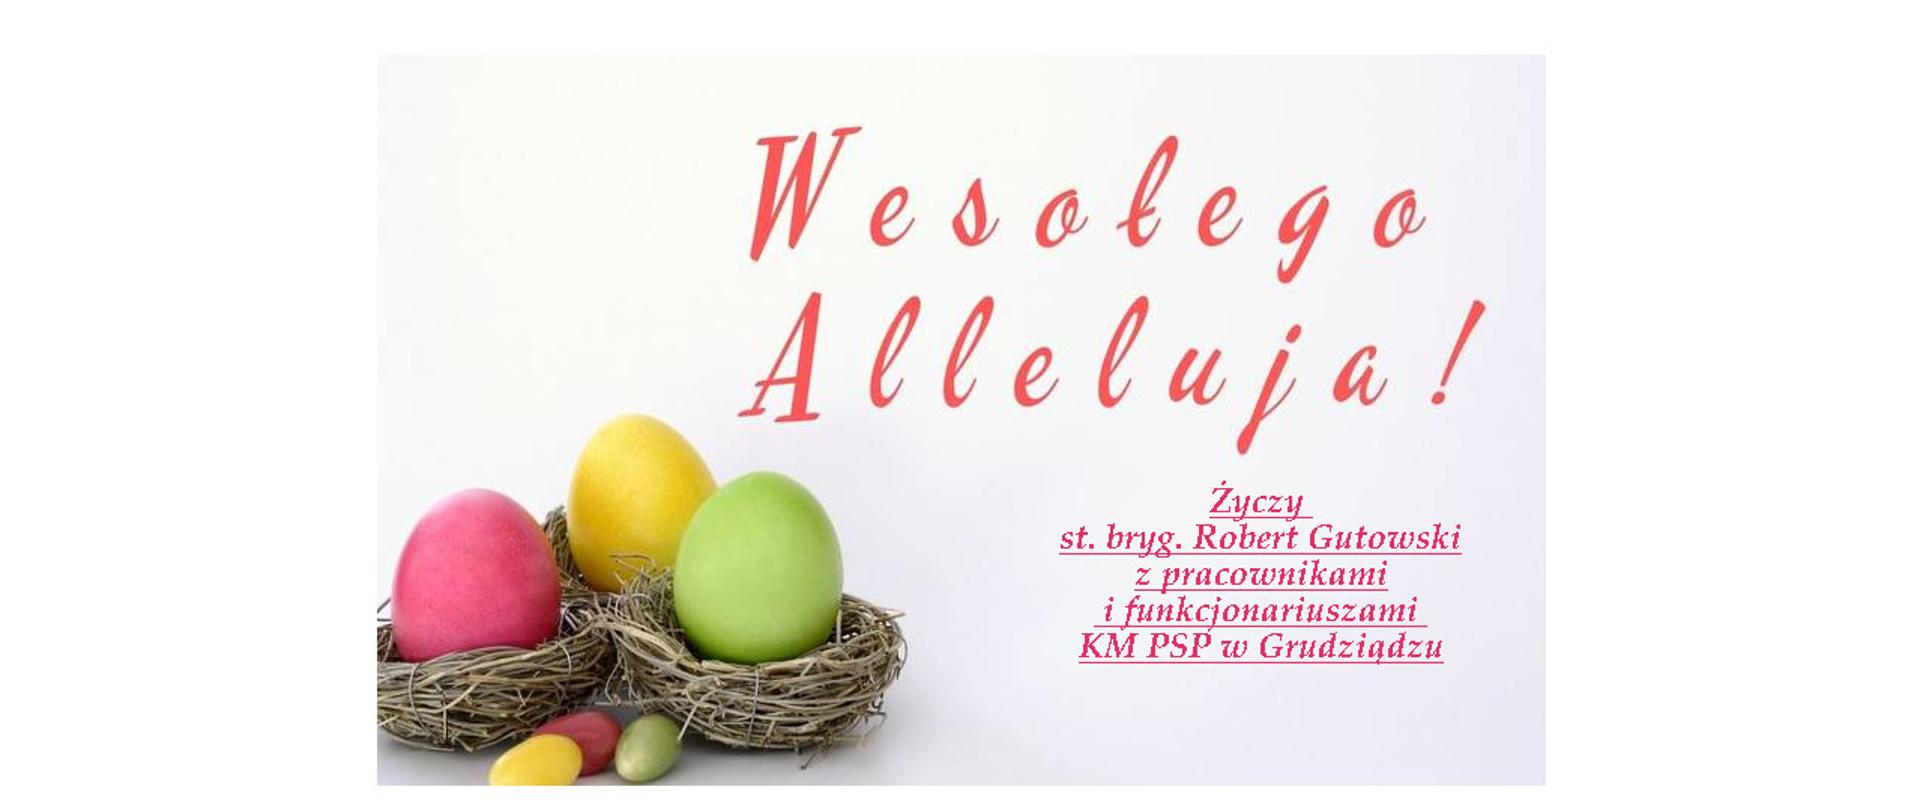 Zdjęcie przedstawia 3 kolorowe jajka w uplecionych gniazdach i 3 mniejsze leżące przed nimi. Ponad nimi i obok po prawej stronie napisy "Wesołego Alleluja" i "Życzy st. bryg. Robert Gutowski z pracownikami i funkcjonariuszami KM PSP w Grudziądzu.